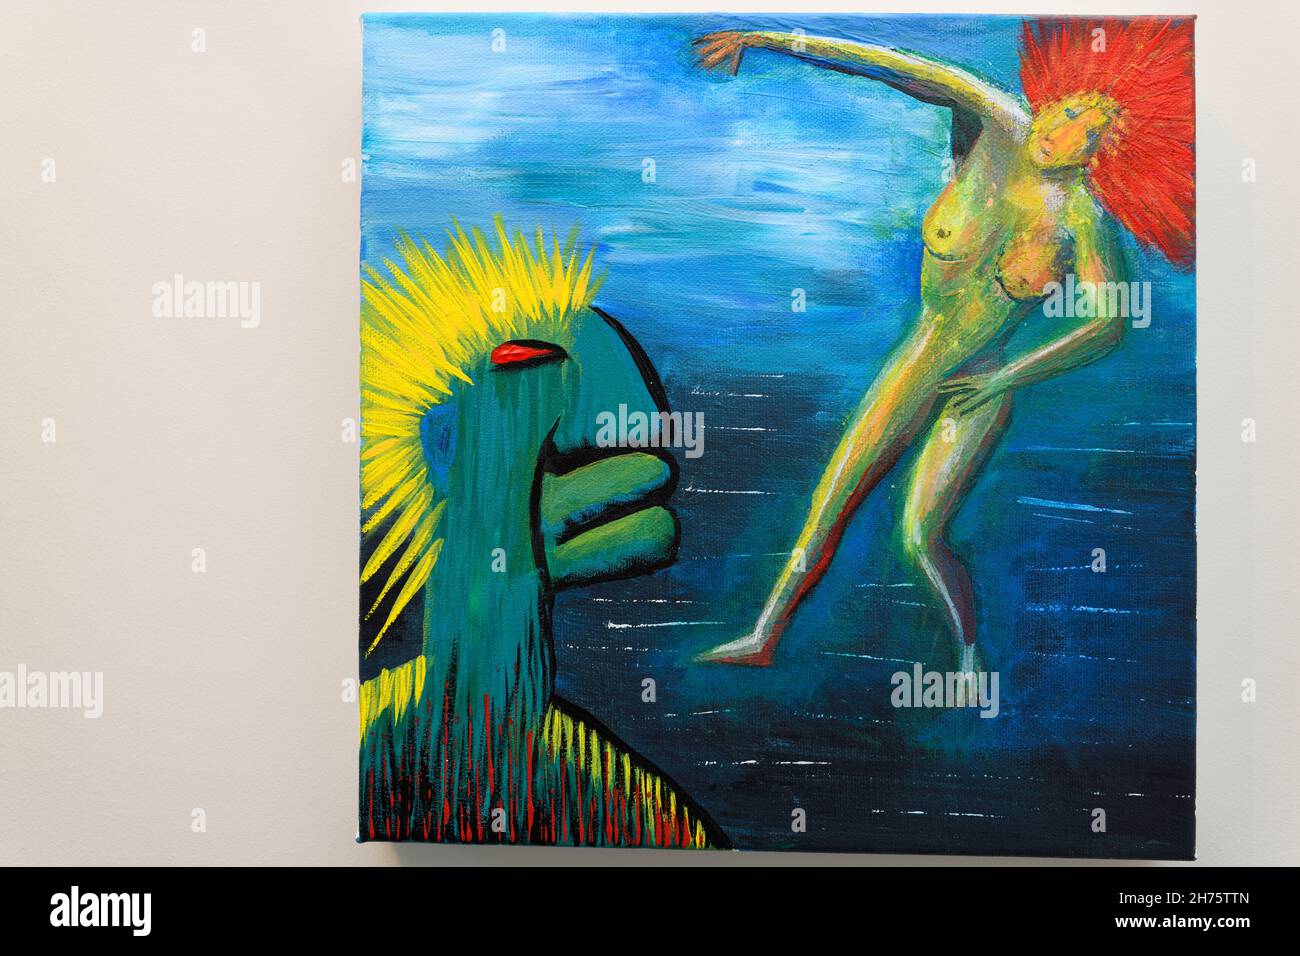 Pintura acrílica impresionista abstracta sobre lienzo cuadrado de hombre verde que se errecía al desnudo de la mujer del equilibrio con el pelo rojo Foto de stock